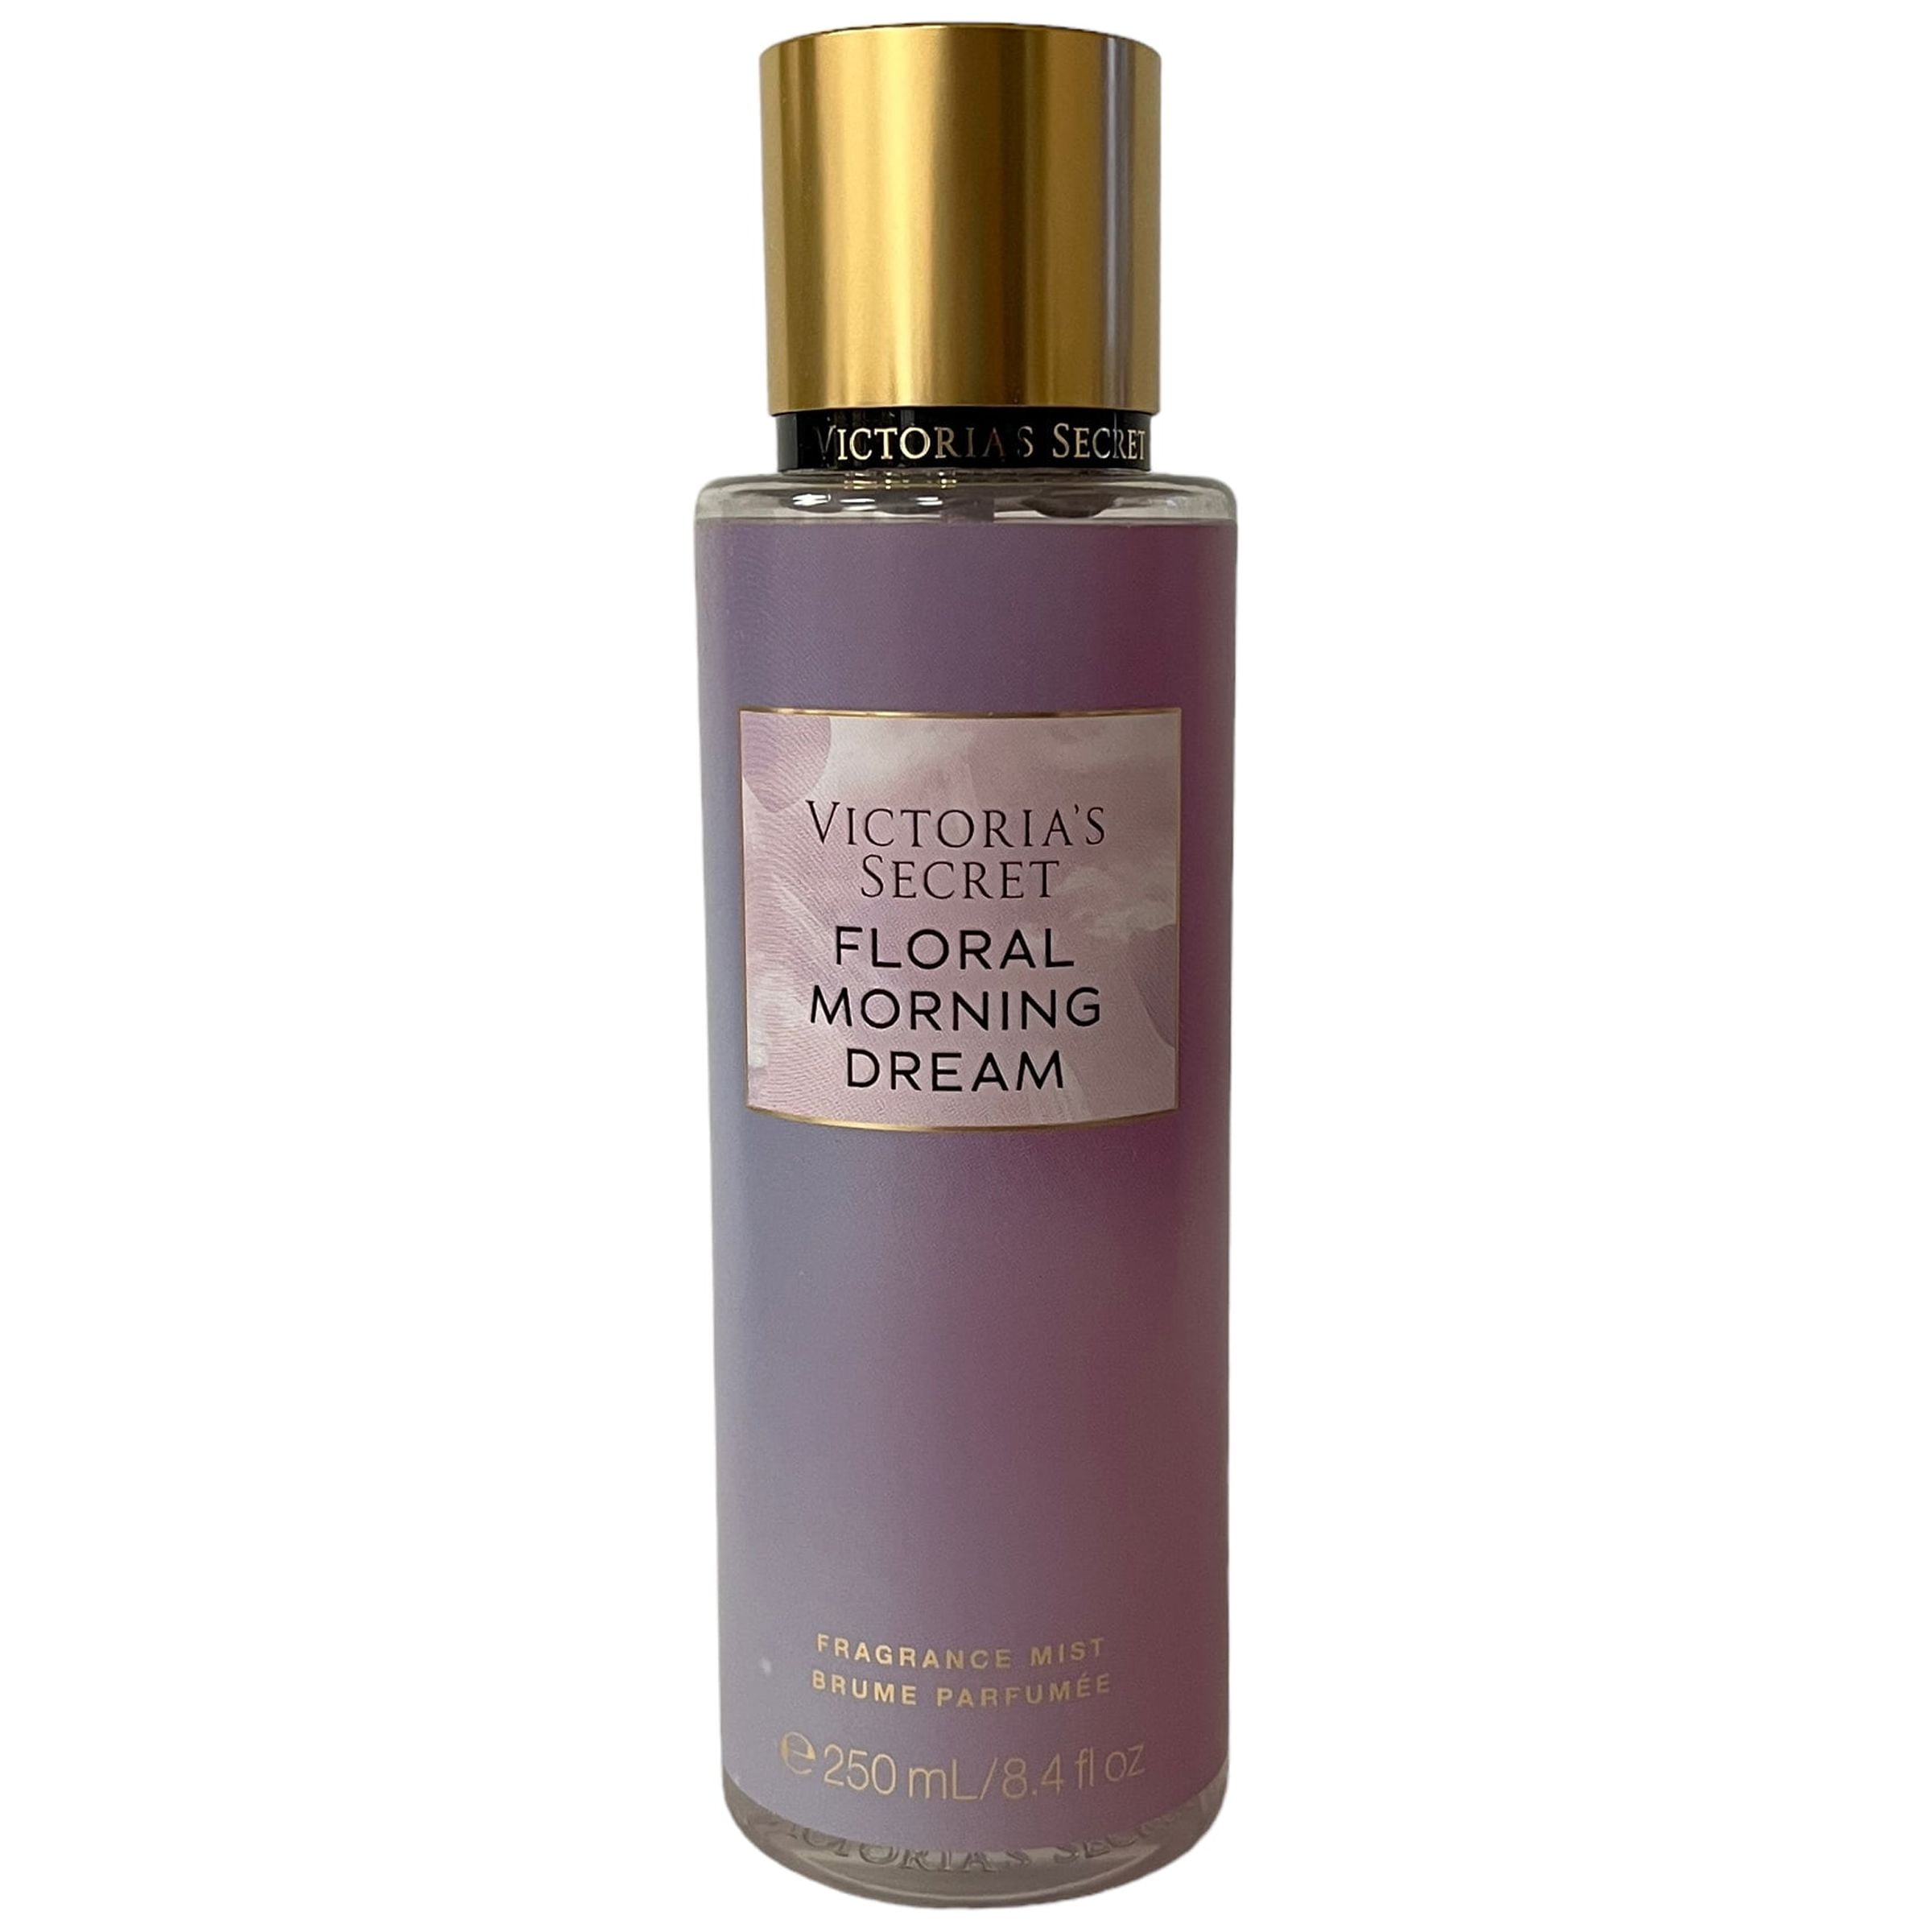 Victoria's Secret Floral Morning Dream Fragrance Mist 8.4 fl oz